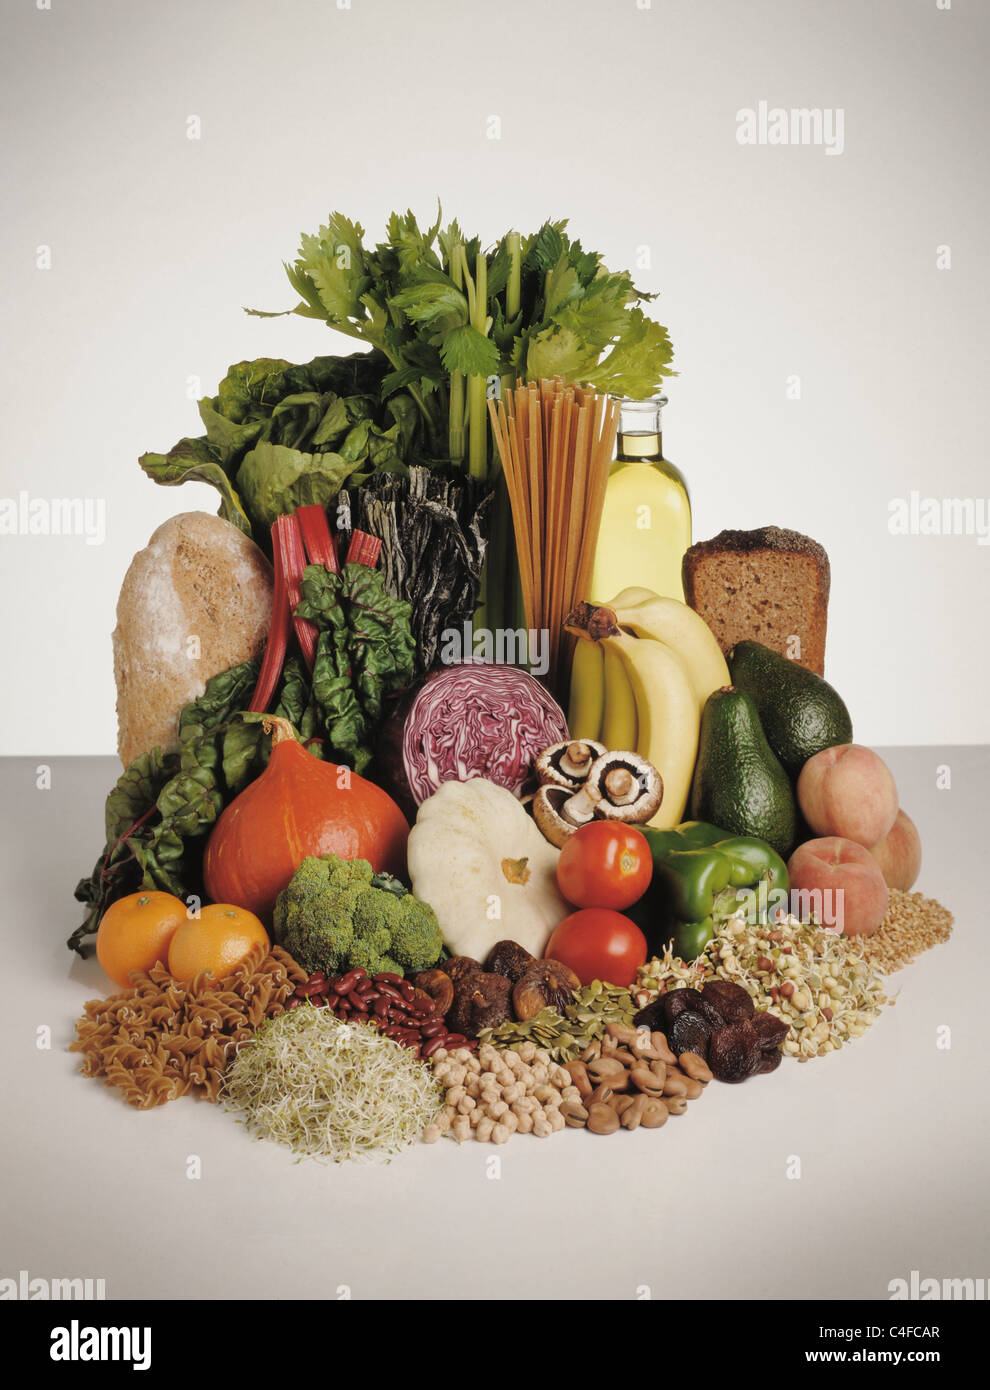 Anzeige von gesunden Lebensmitteln, Obst, Gemüse, Hülsenfrüchte, Nudeln und Brot. Stockfoto